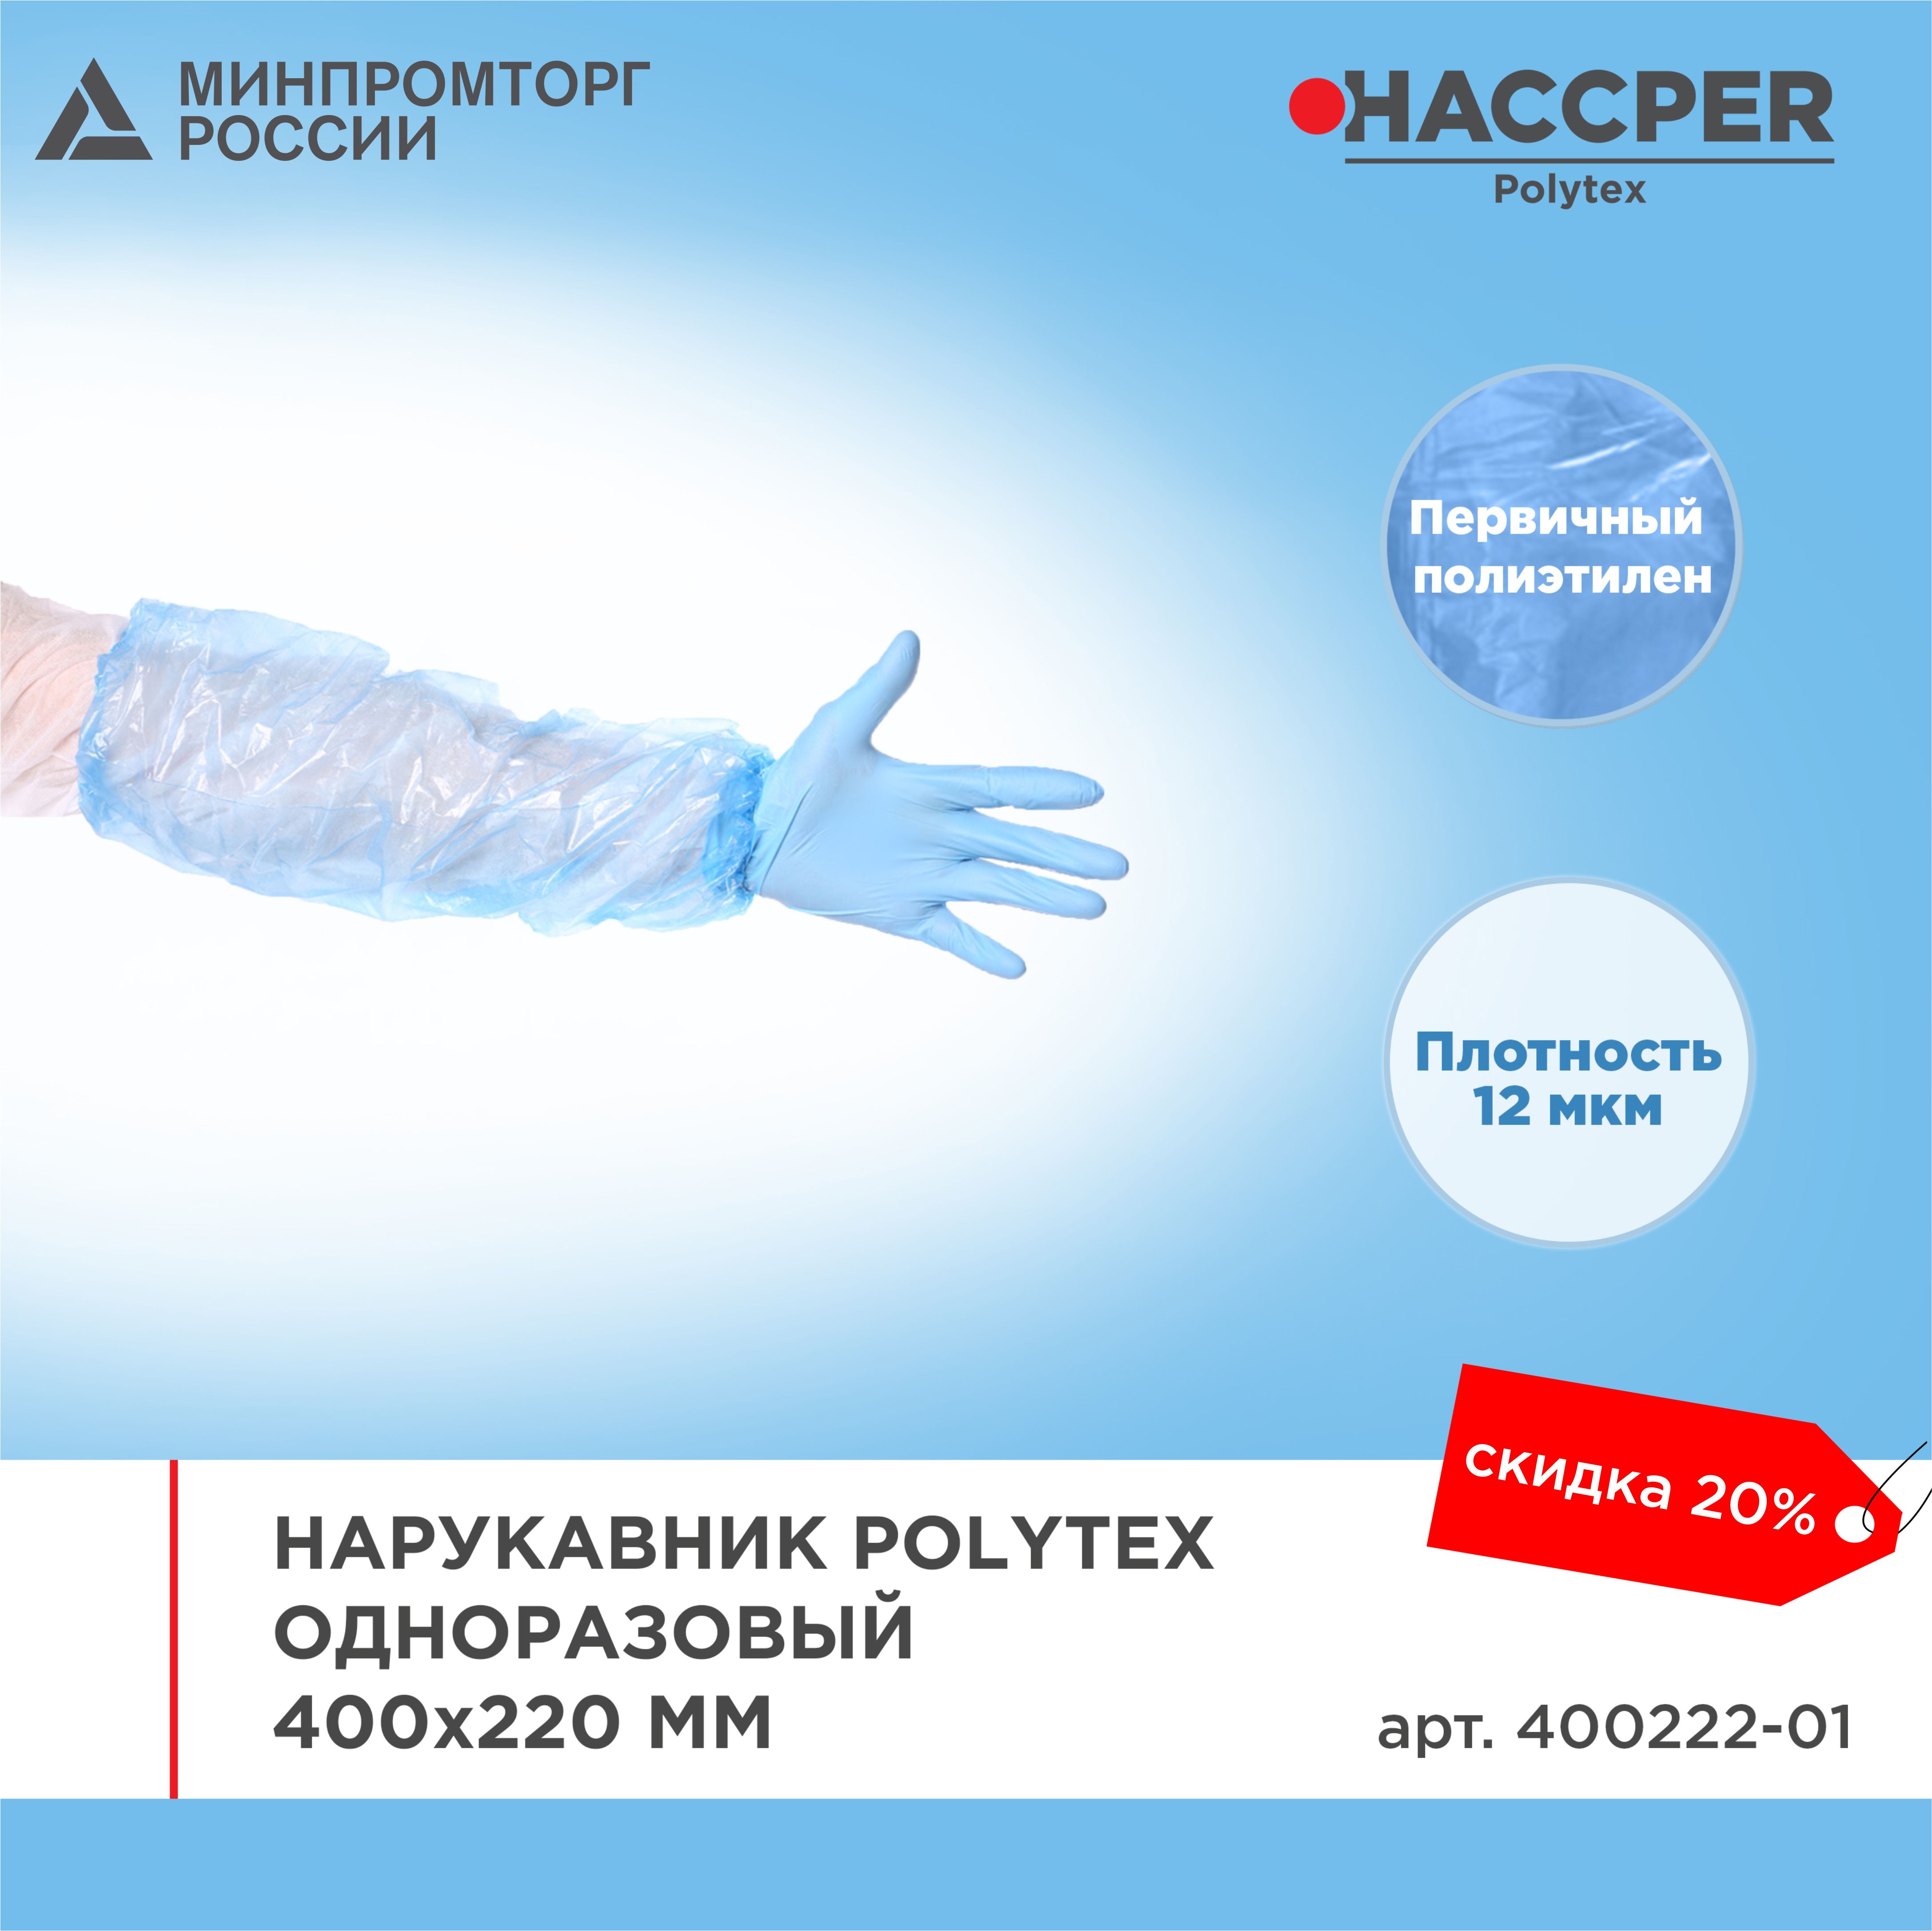 Нарукавник HACCPER Polytex одноразовый, 400x220 мм, 12 мкм, голубой, 2000 шт/кор